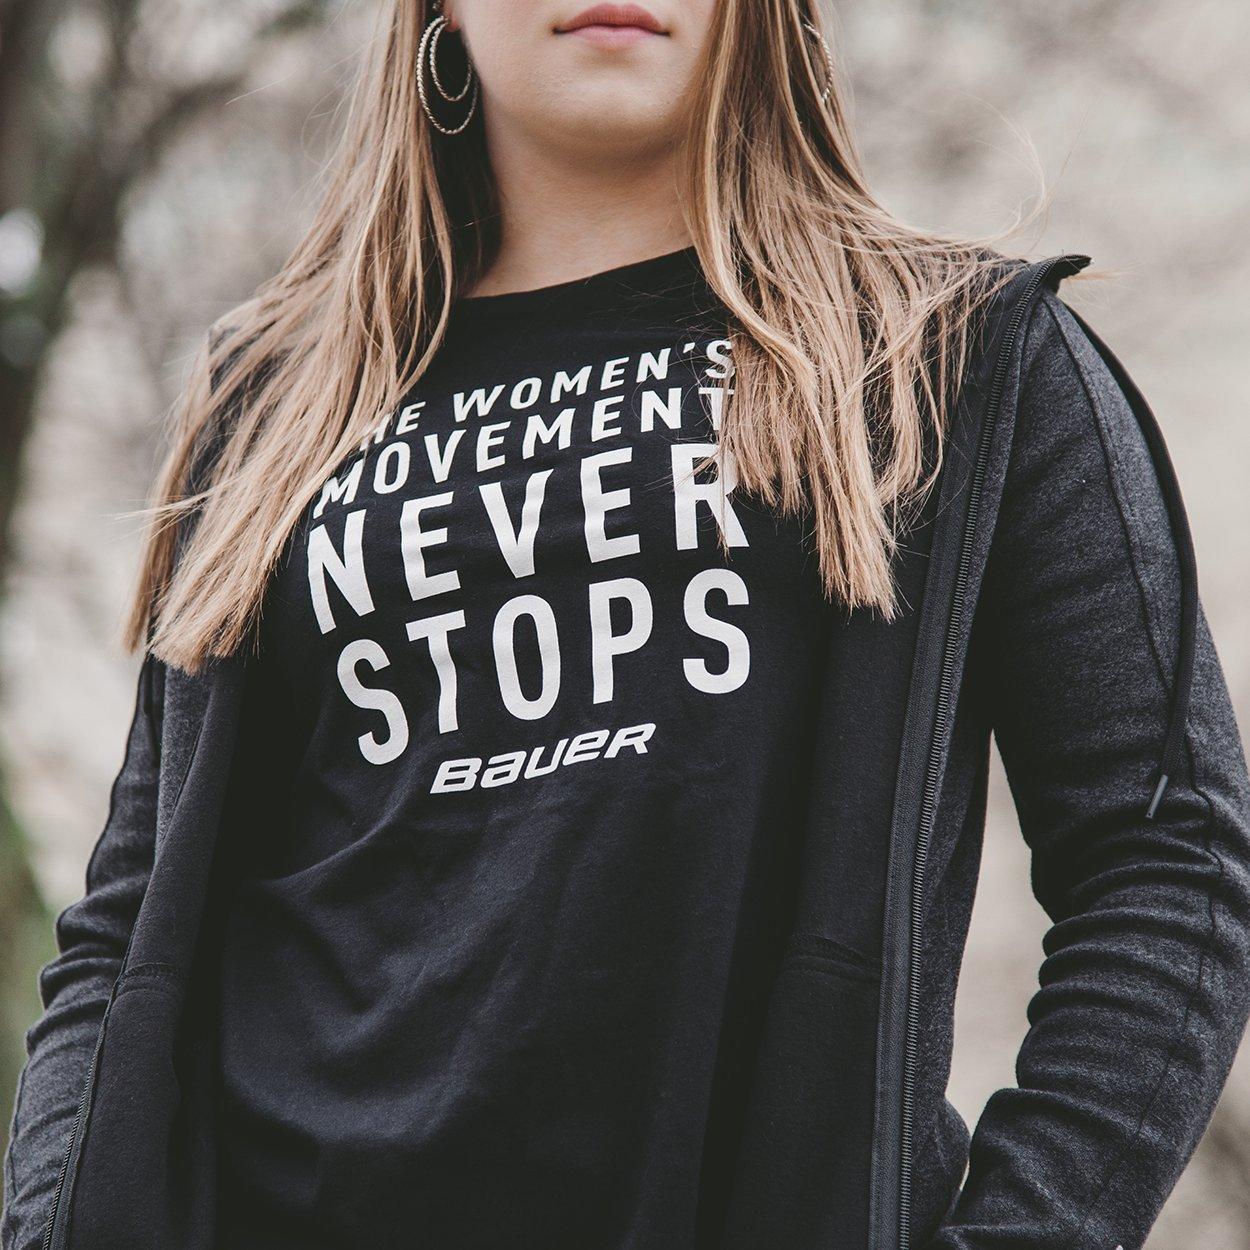 Bauer Women's Movement T-Shirt